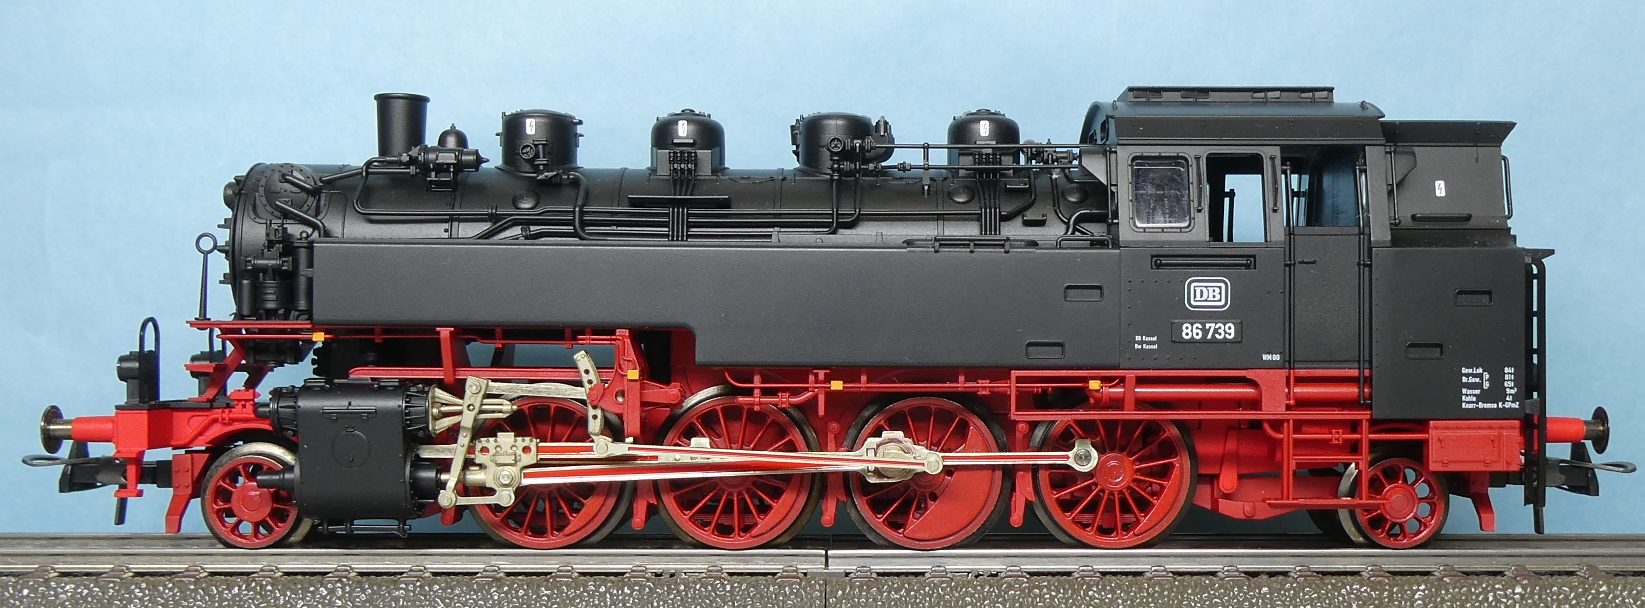 ドイツ連邦鉄道 DB 貨物用タンク式蒸気機関車 BR 86 739号機 ...